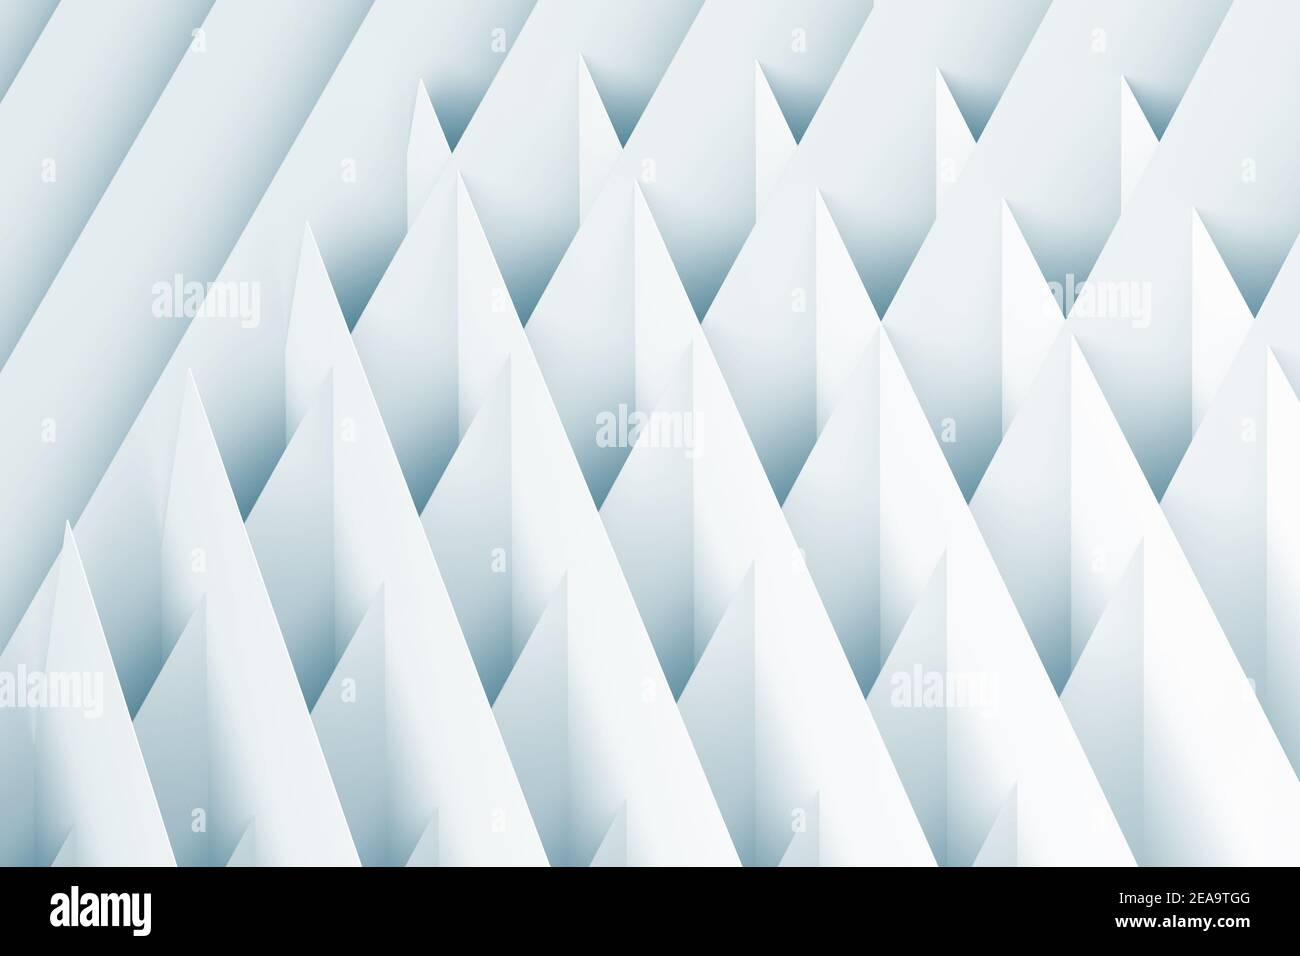 Arrière-plan géométrique abstrait. Feuilles de papier blanc entrecoupées, motif cgi de couleur bleue. illustration du rendu 3d Banque D'Images